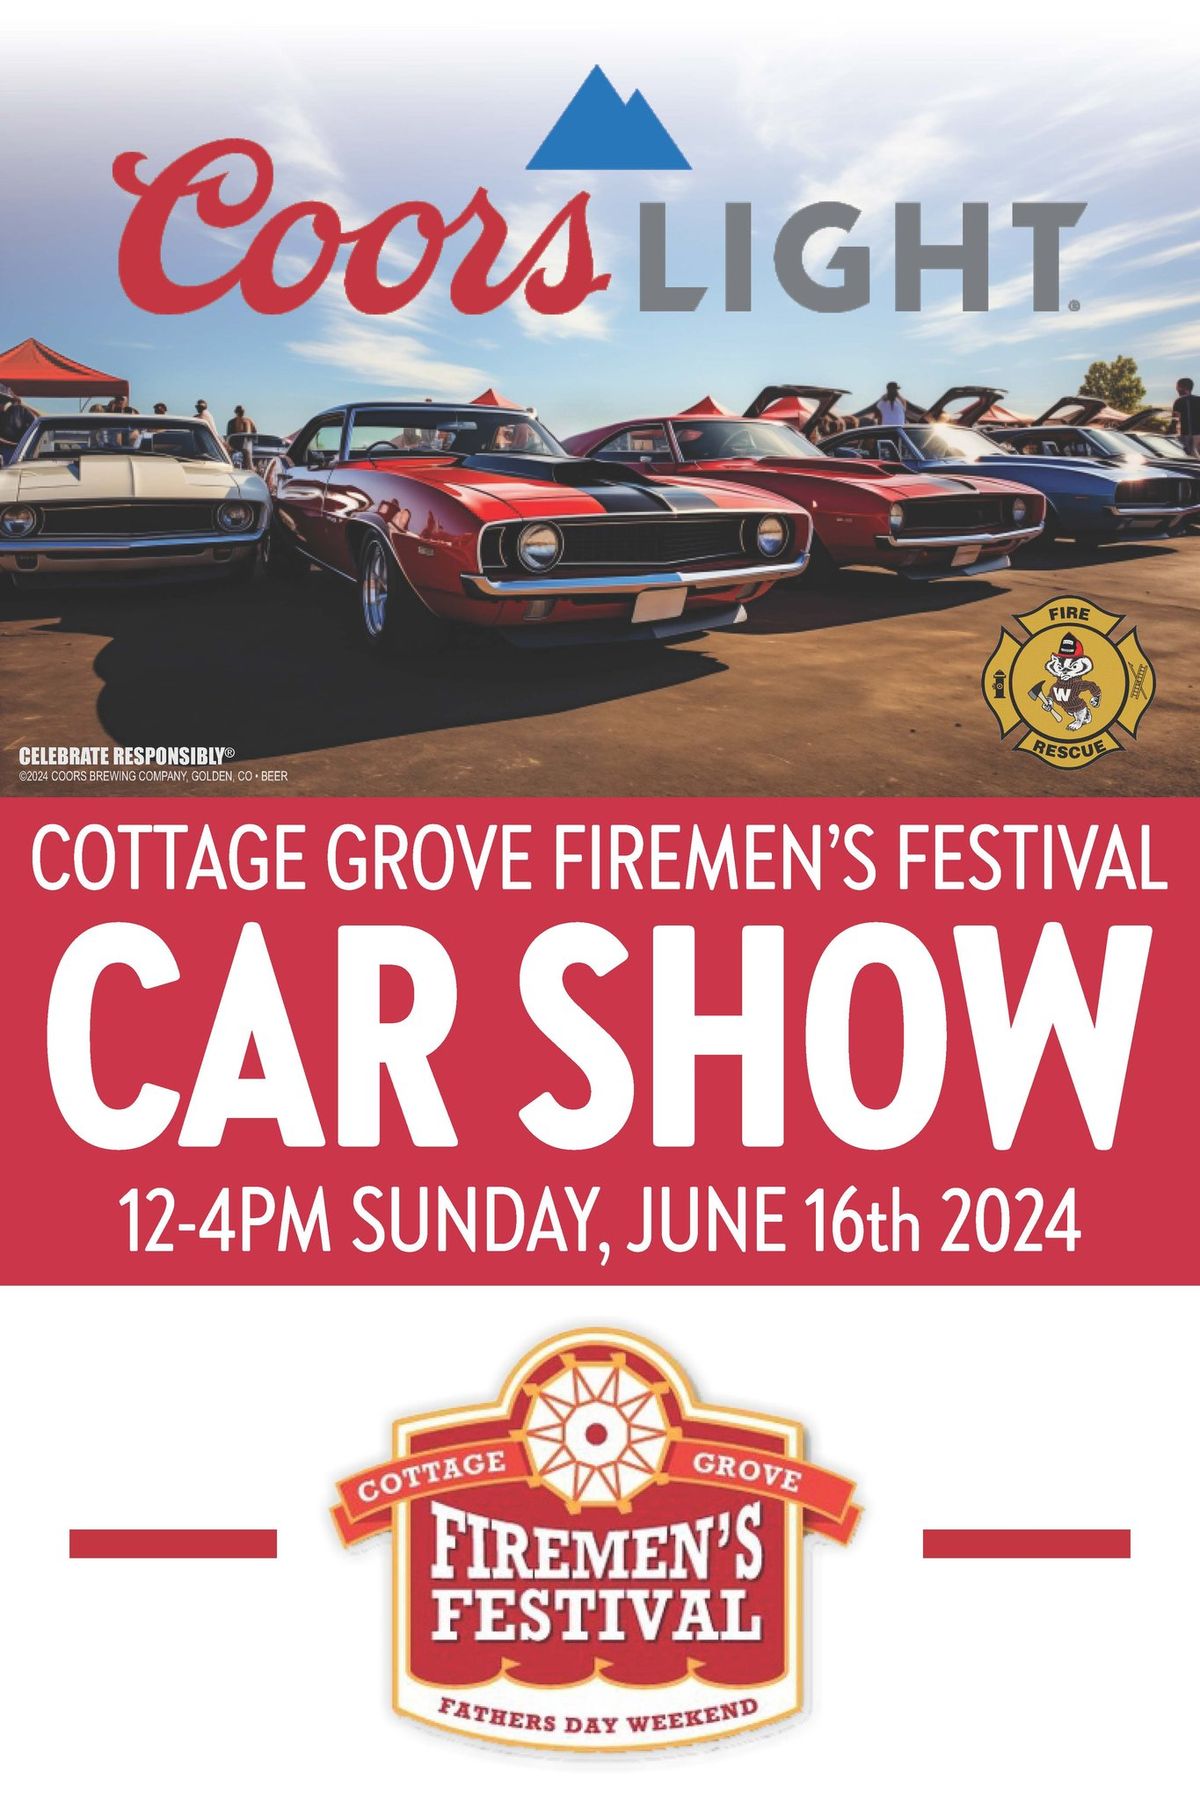 Cottage Grove Firemen's Festival Car Show